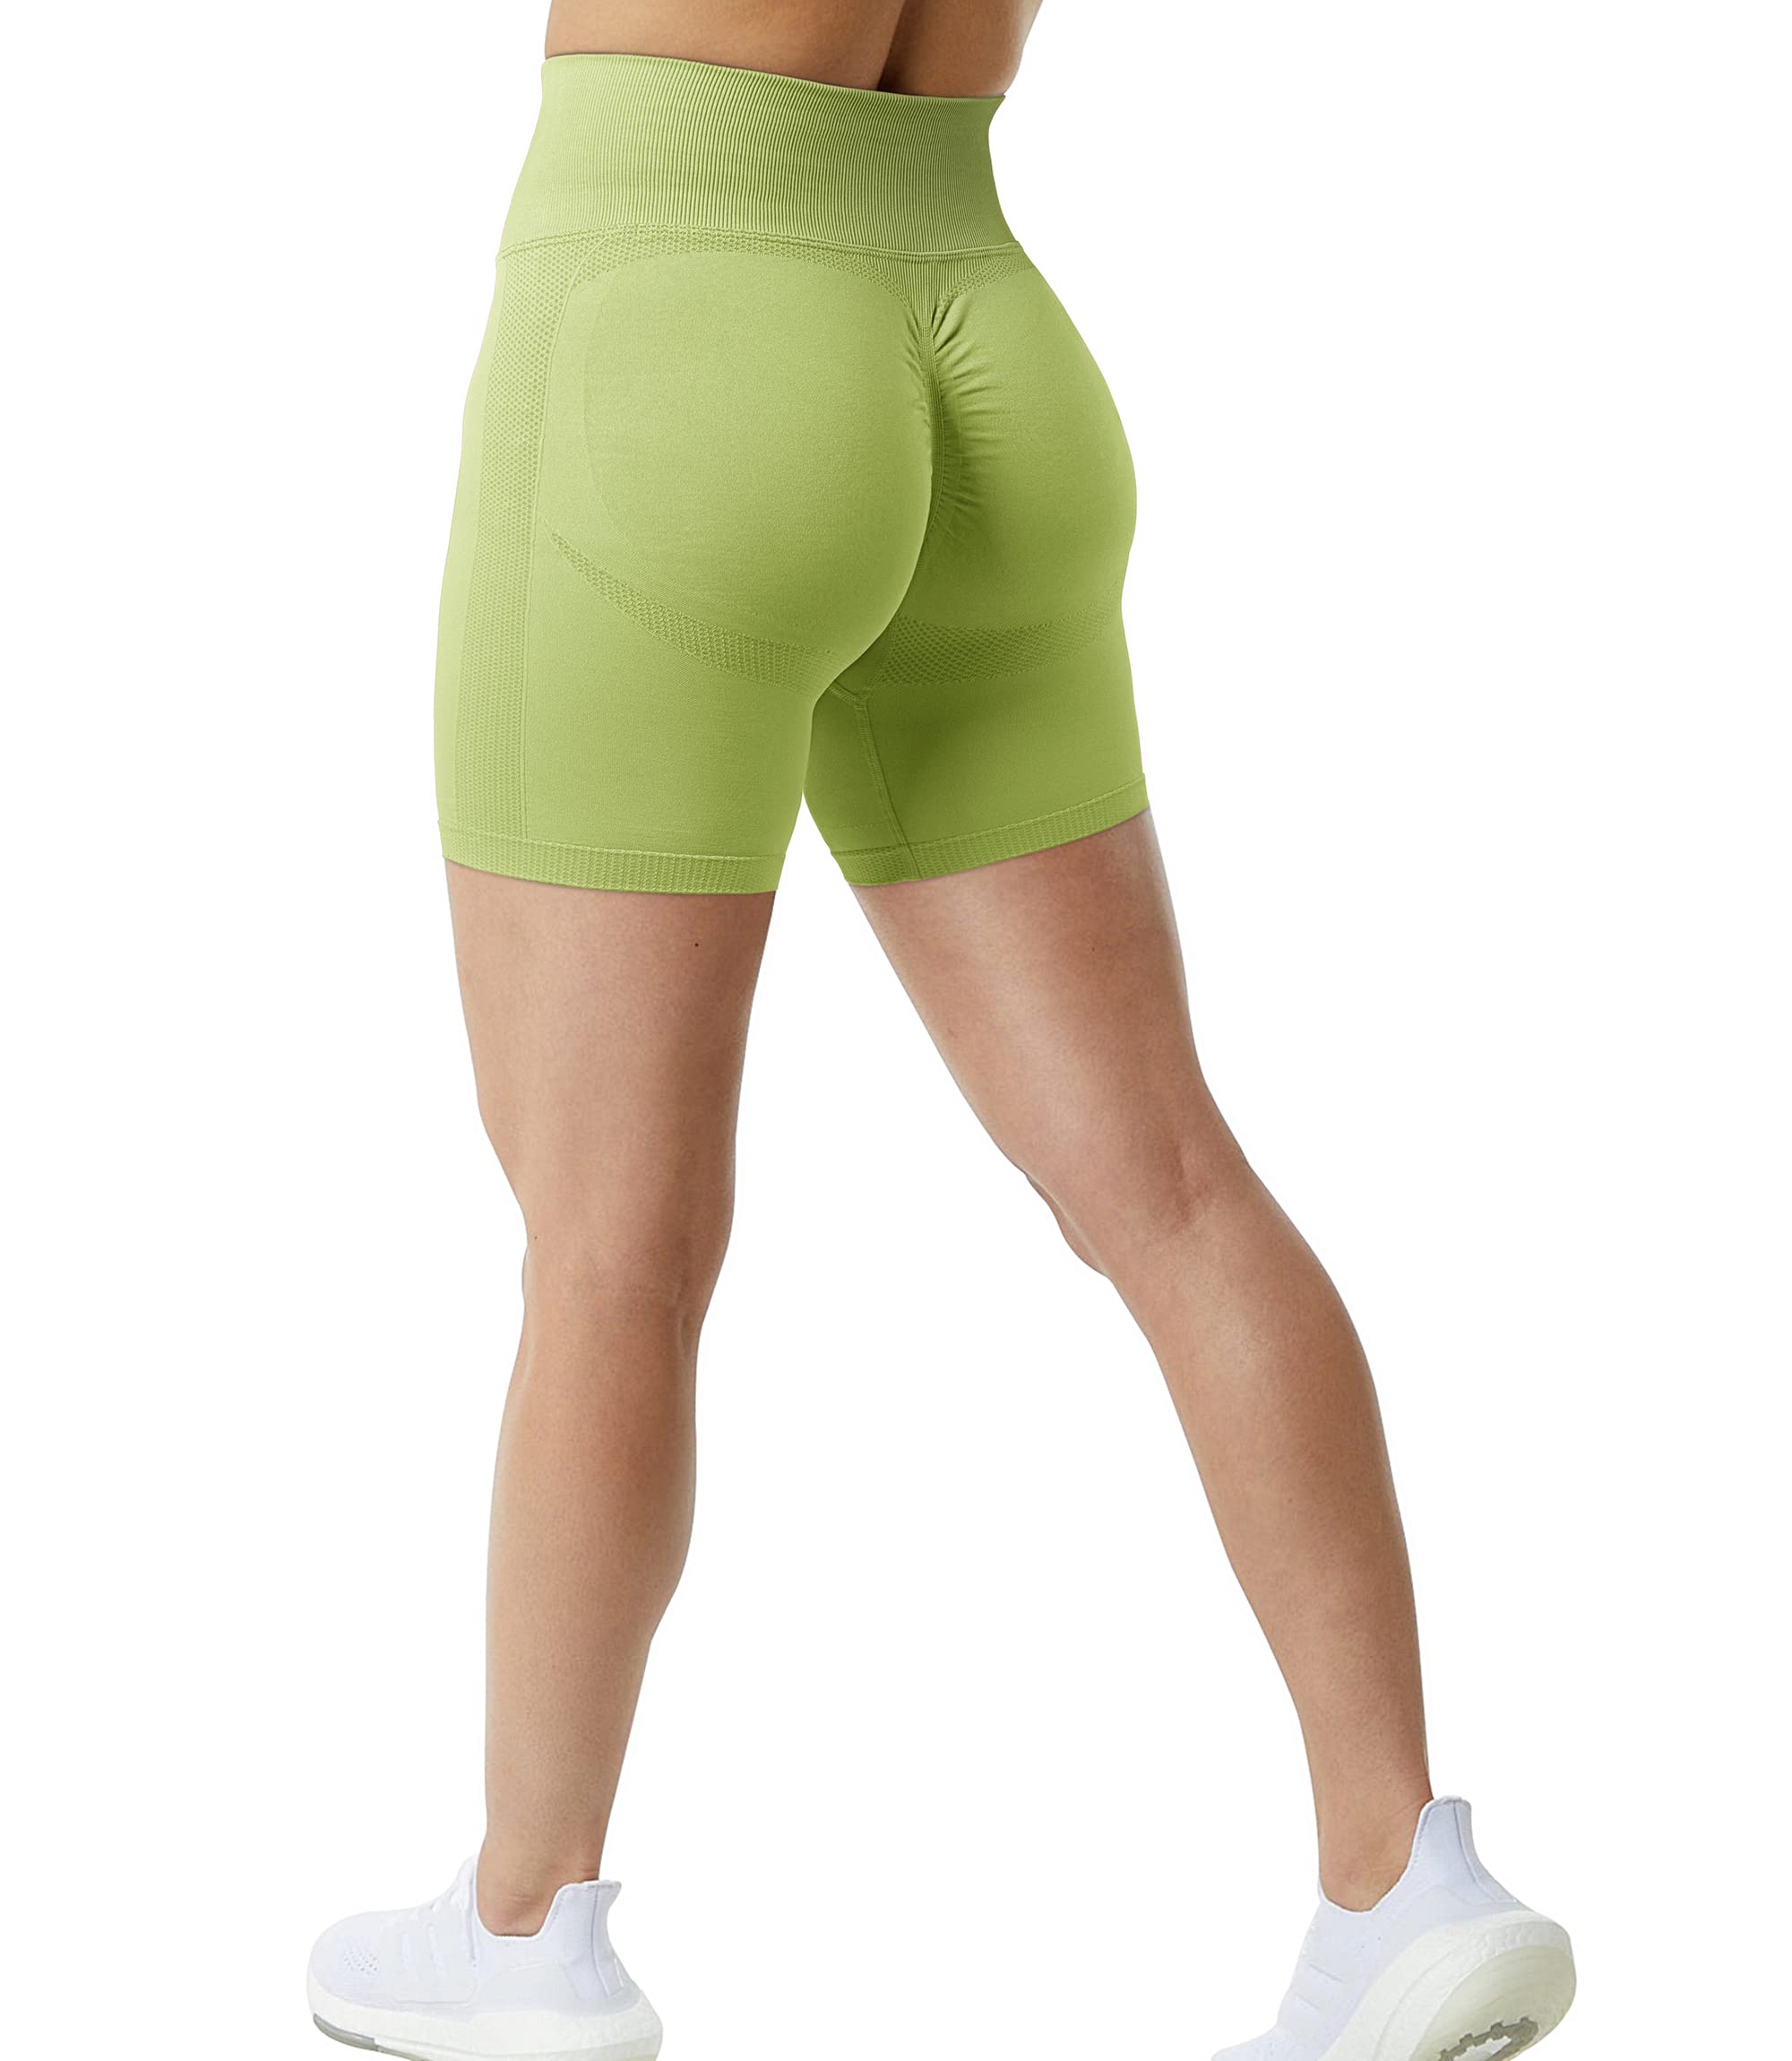 JANVUR Scrunch Butt Lifting Workout Shorts for Women High Waisted Butt Lift  Yoga Gym Seamless Booty